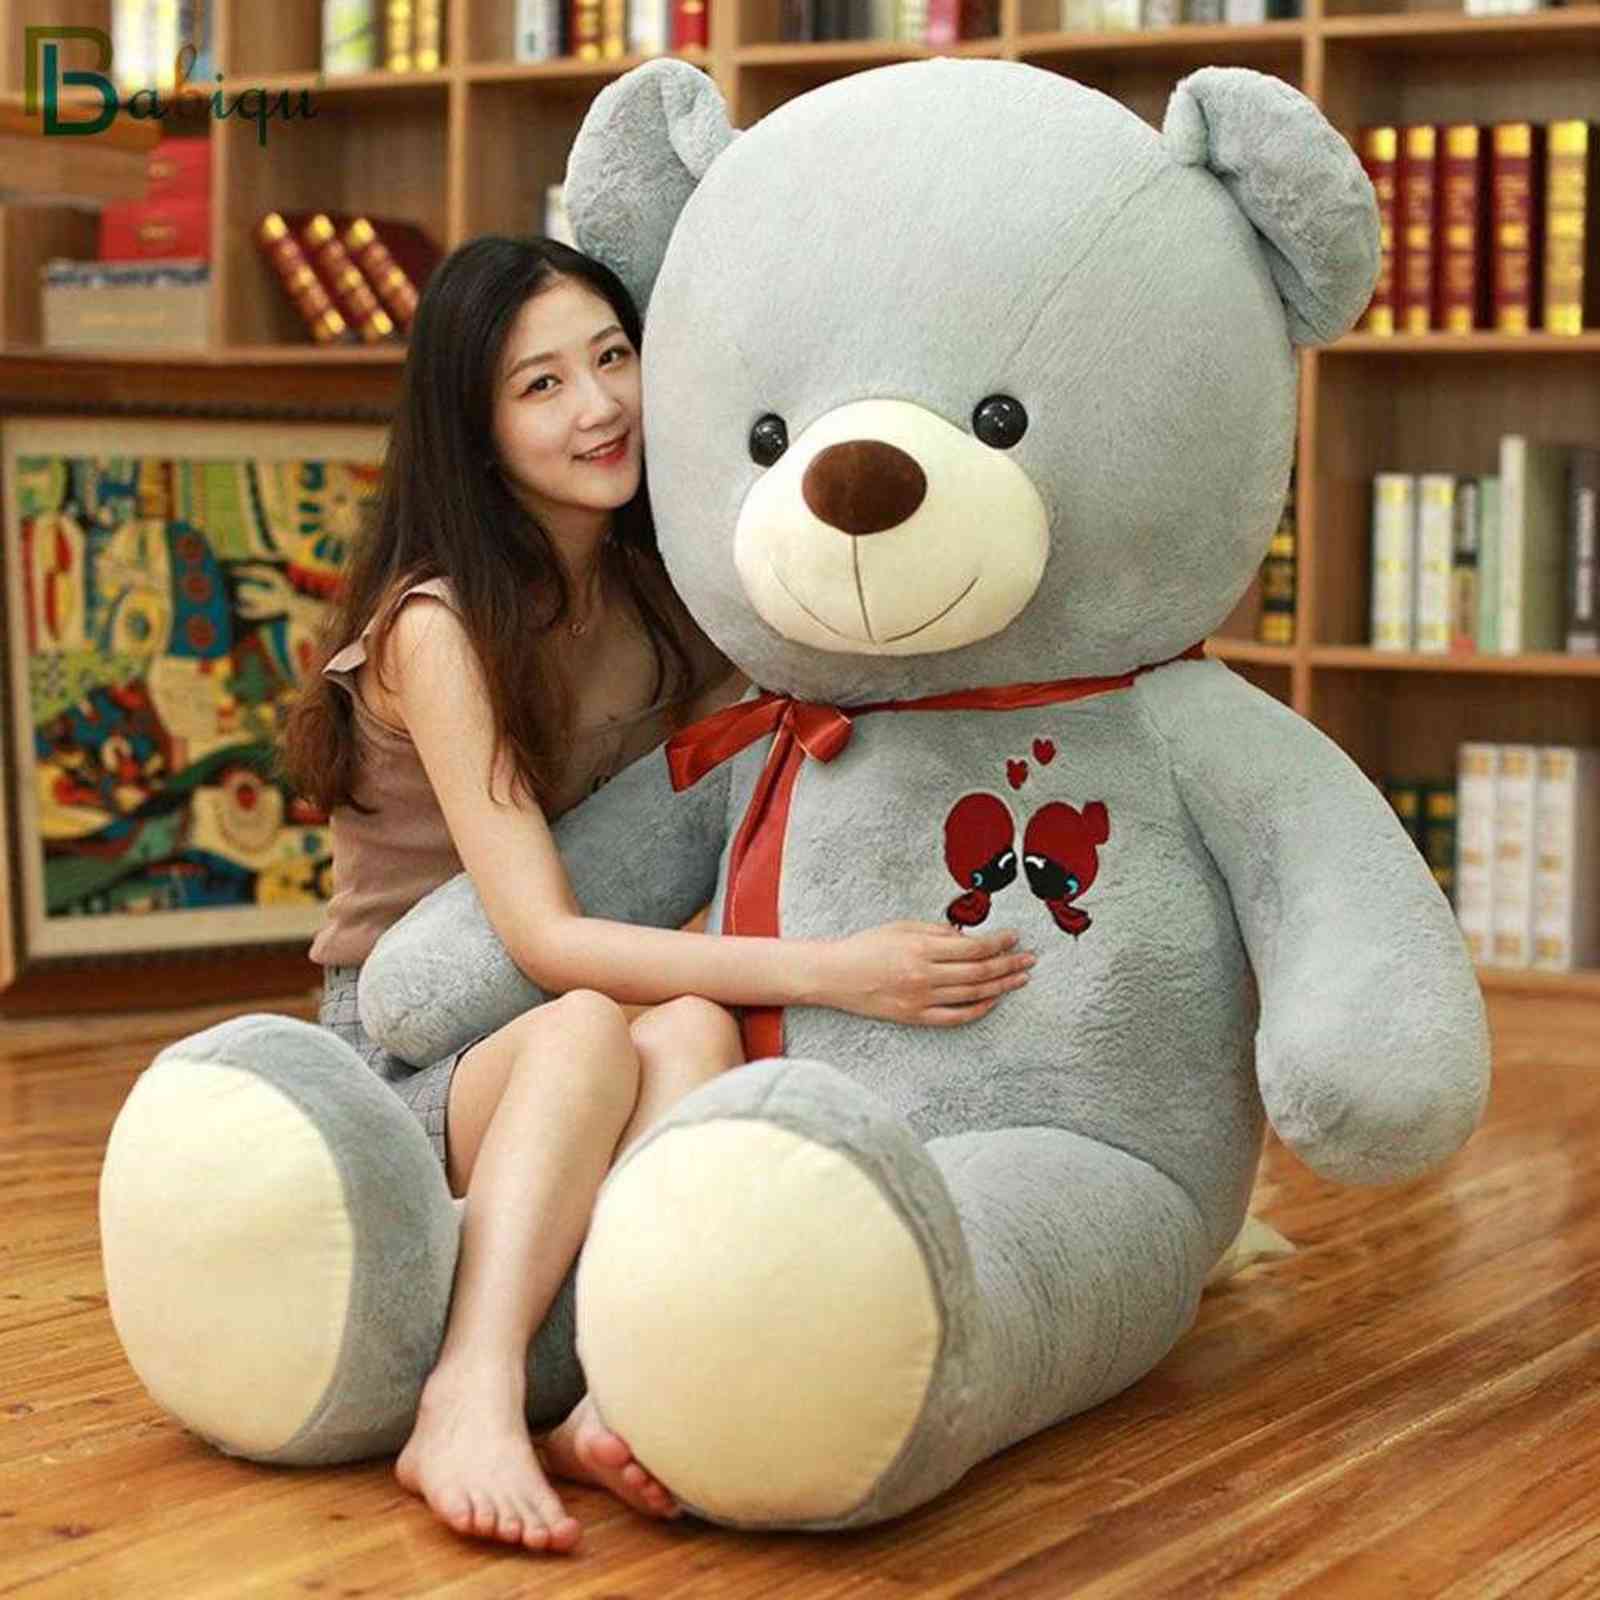 

60-100CM Large Teddy Bear Plush Toy Lovely Giant Bear Huge Stuffed Soft Animal Dolls Kids Birthday Gift For Girlfriend Lover, Dark brown